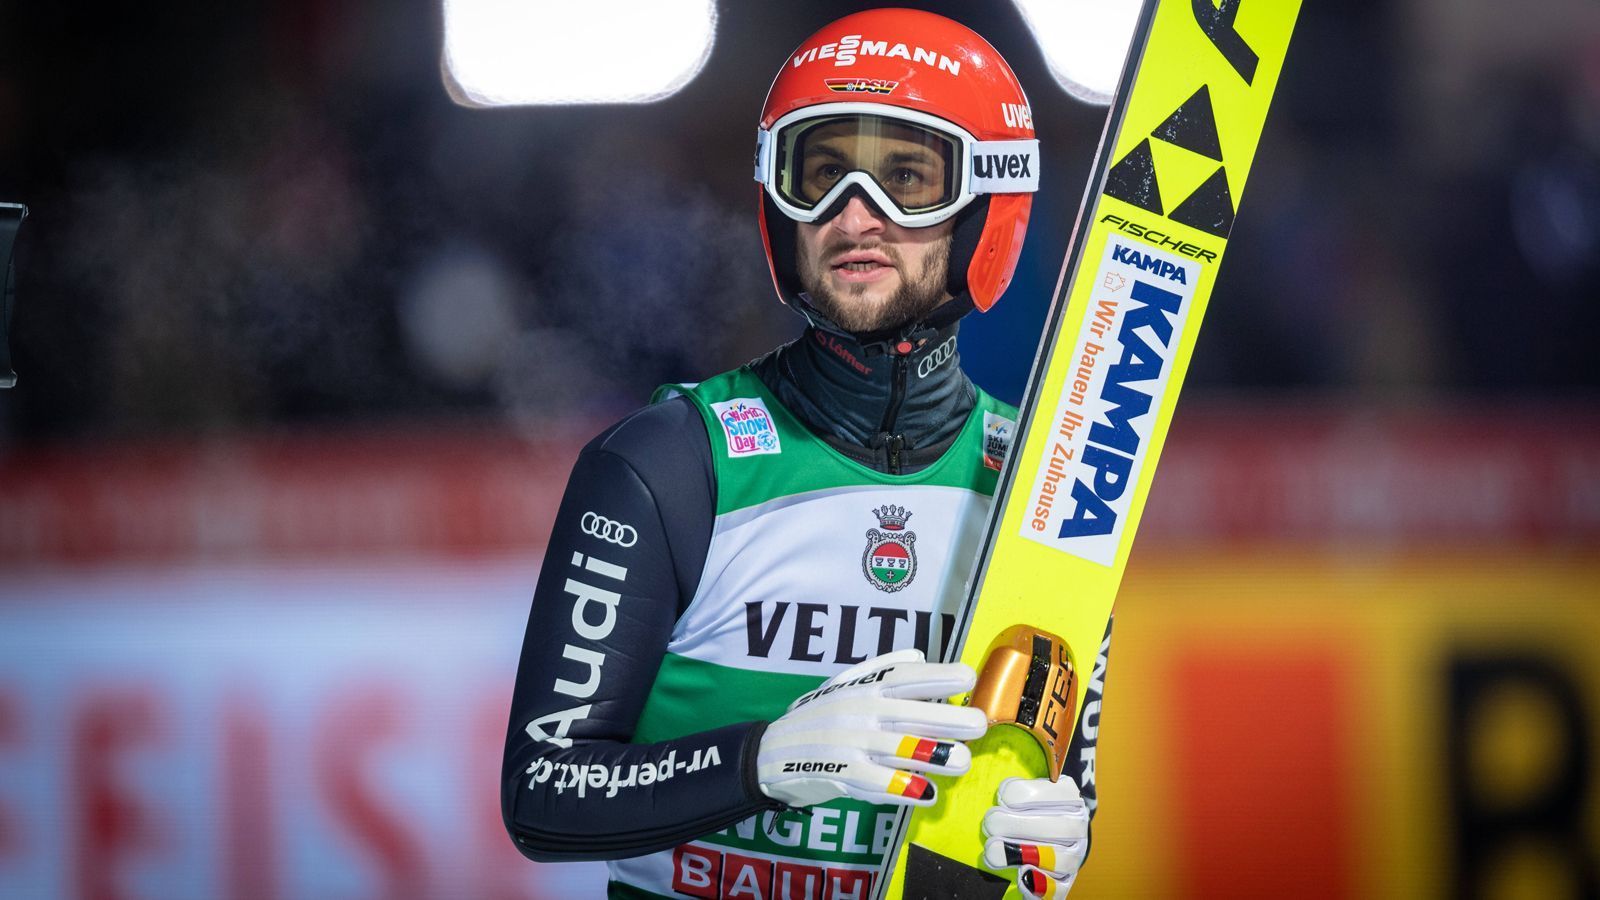 
                <strong>Markus Eisenbichler</strong><br>
                Der 29-Jährige ist der große deutsche Hoffnungsträger und reist als Nummer 2 des Gesamtweltcups nach Oberstdorf. Drei Weltcups hat er bereits gewonnen. Sein bestes Ergebnis bei der Vierschanzentournee war der 2. Platz 2018/2019. Der Siegsdorfer befindet sich in einer herausragenden Form, gewann in diesem Jahr unter anderem Bronze im Einzel bei der Skiflug-WM.
              